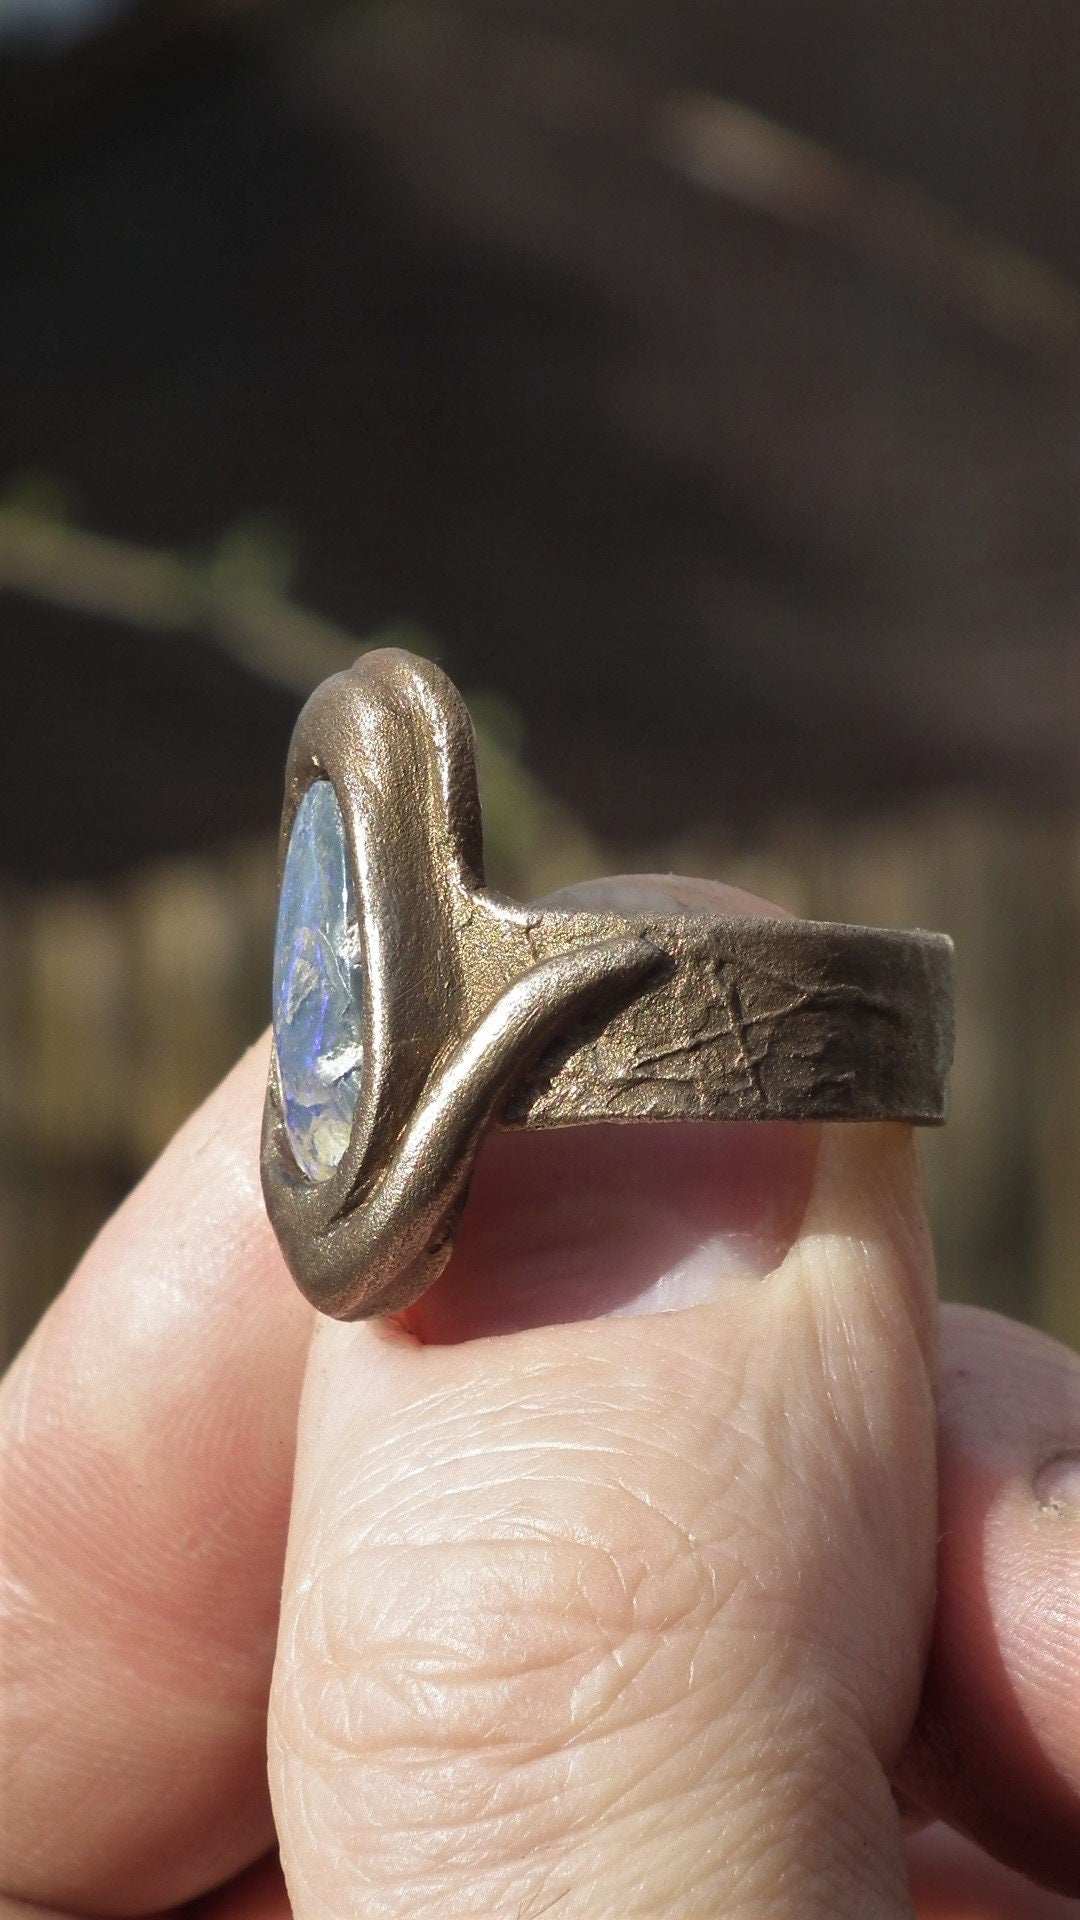 Handmade Bronze blue opal ring with handcut Australian Opal